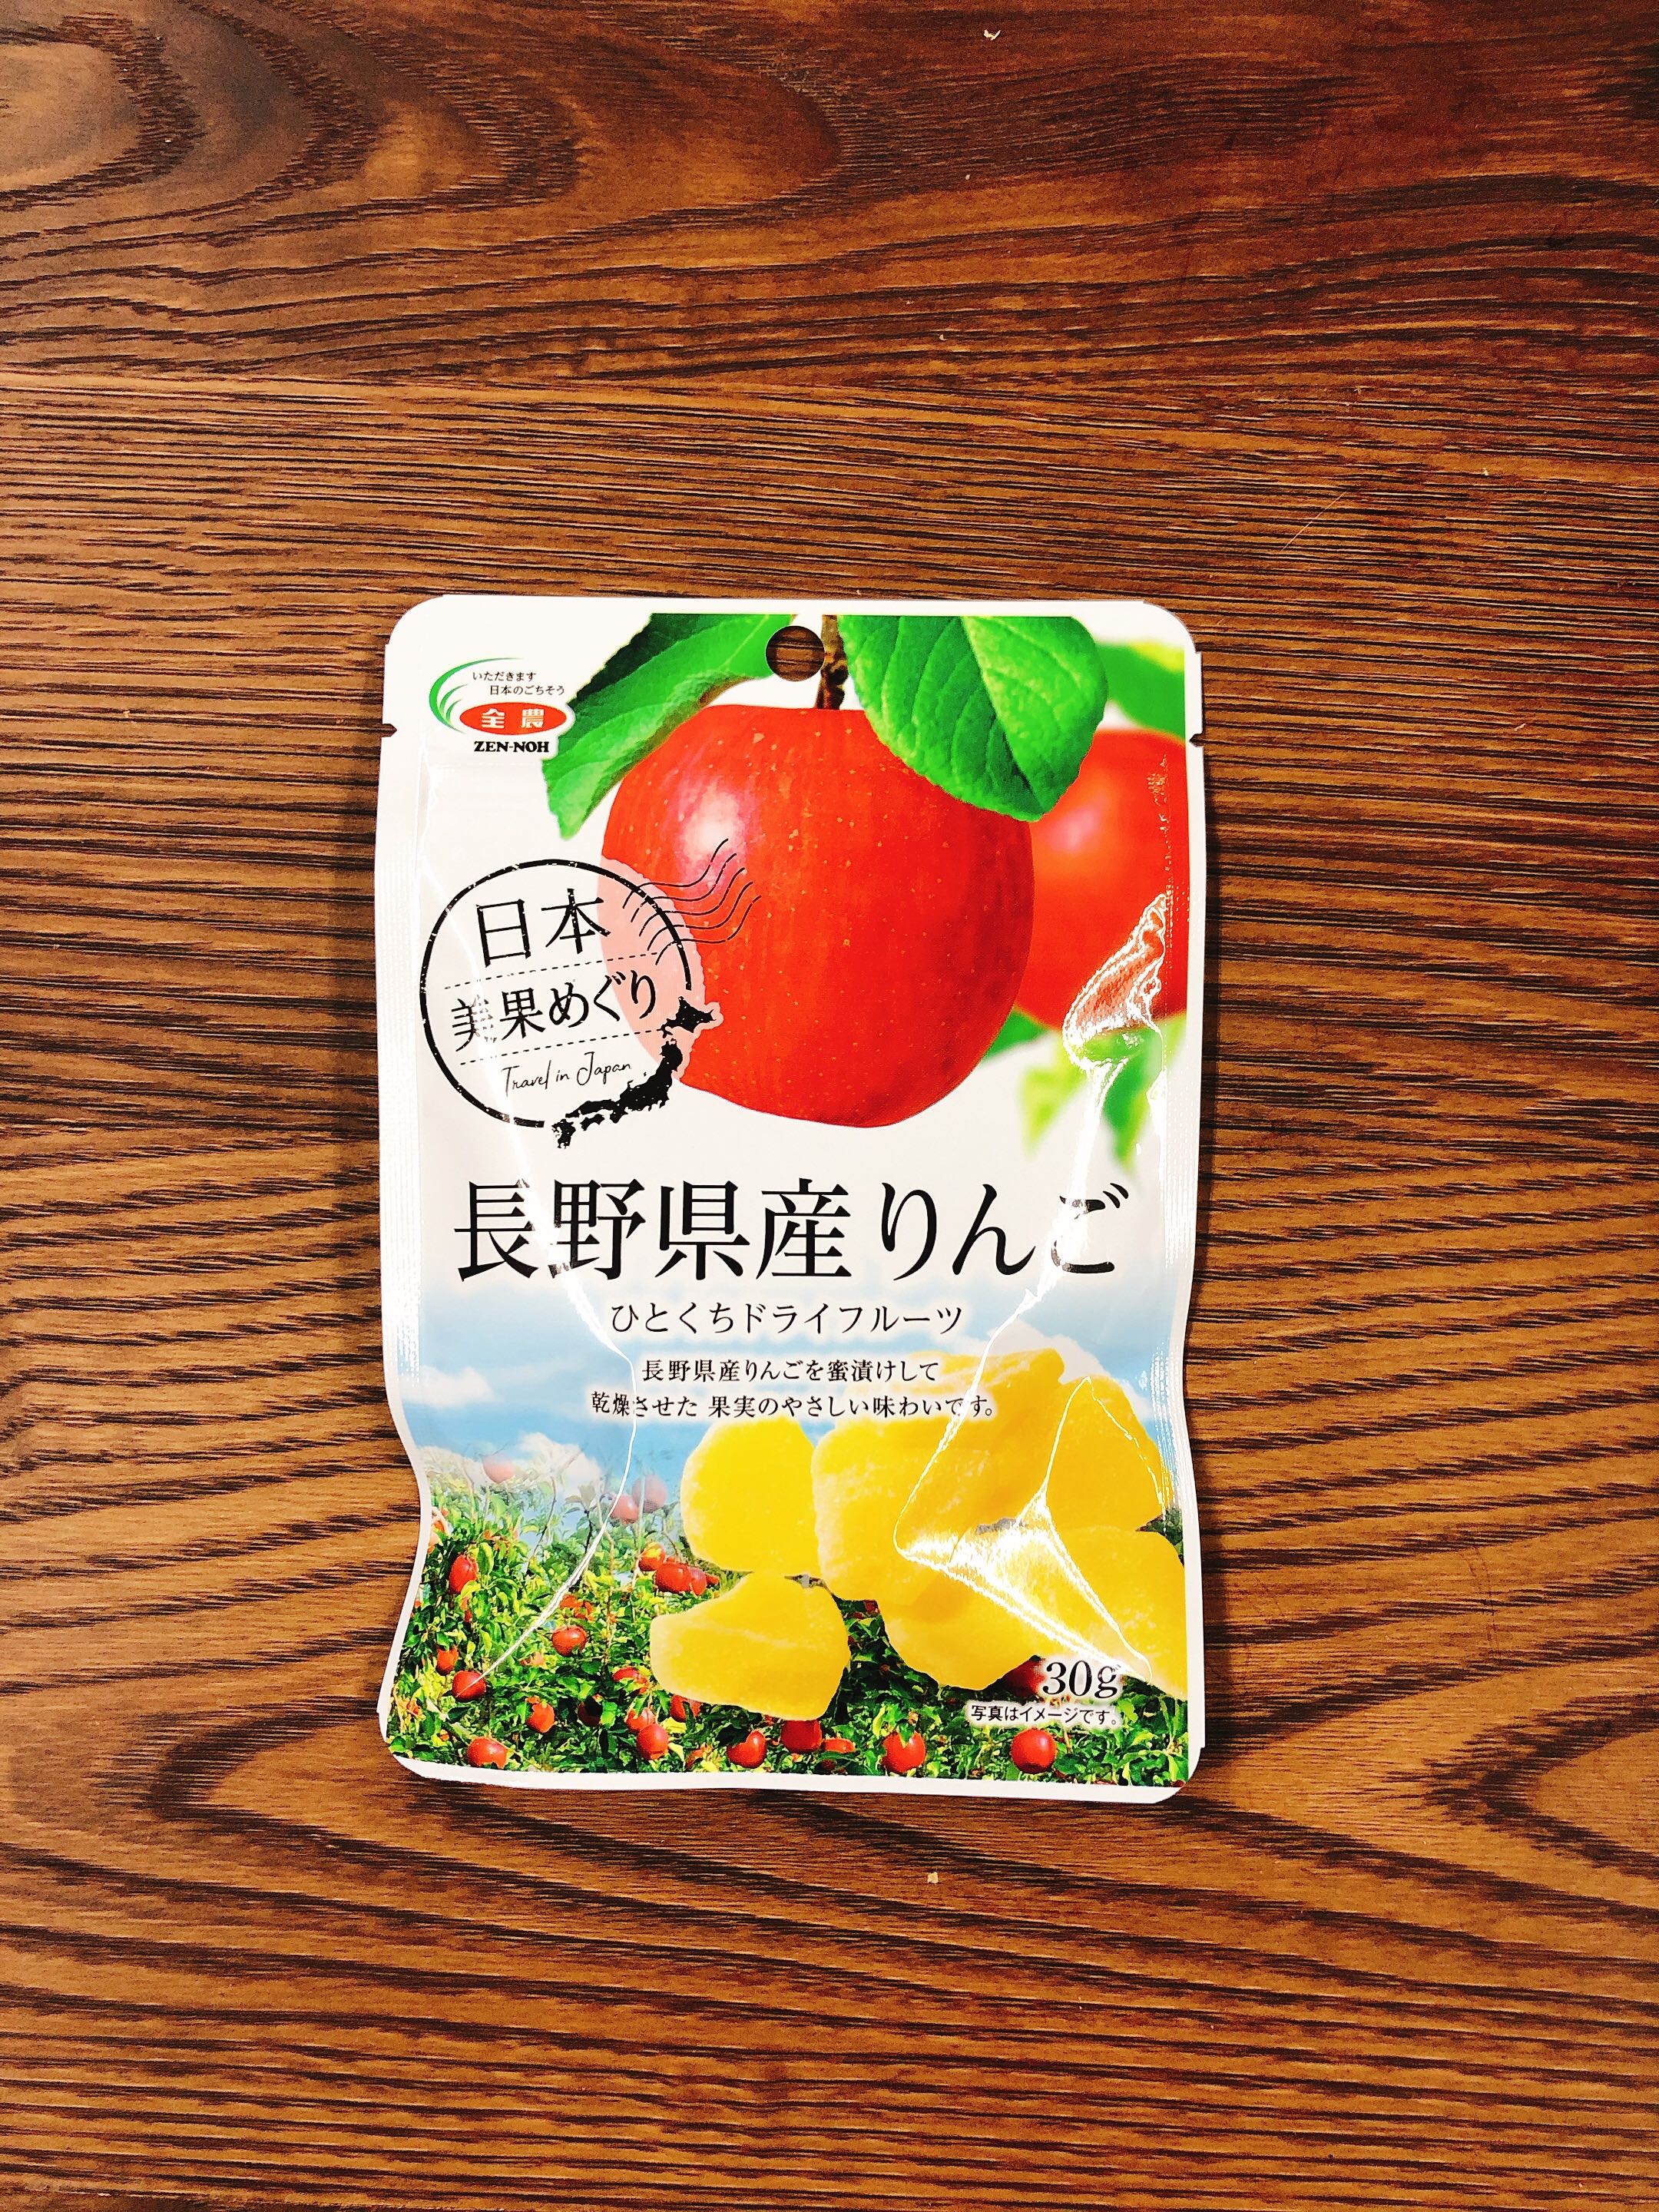 ファミリーマート限定 全農のドライフルーツが超美味しい 長野県産りんごひとくちドライフルーツ Llabo エルラボ